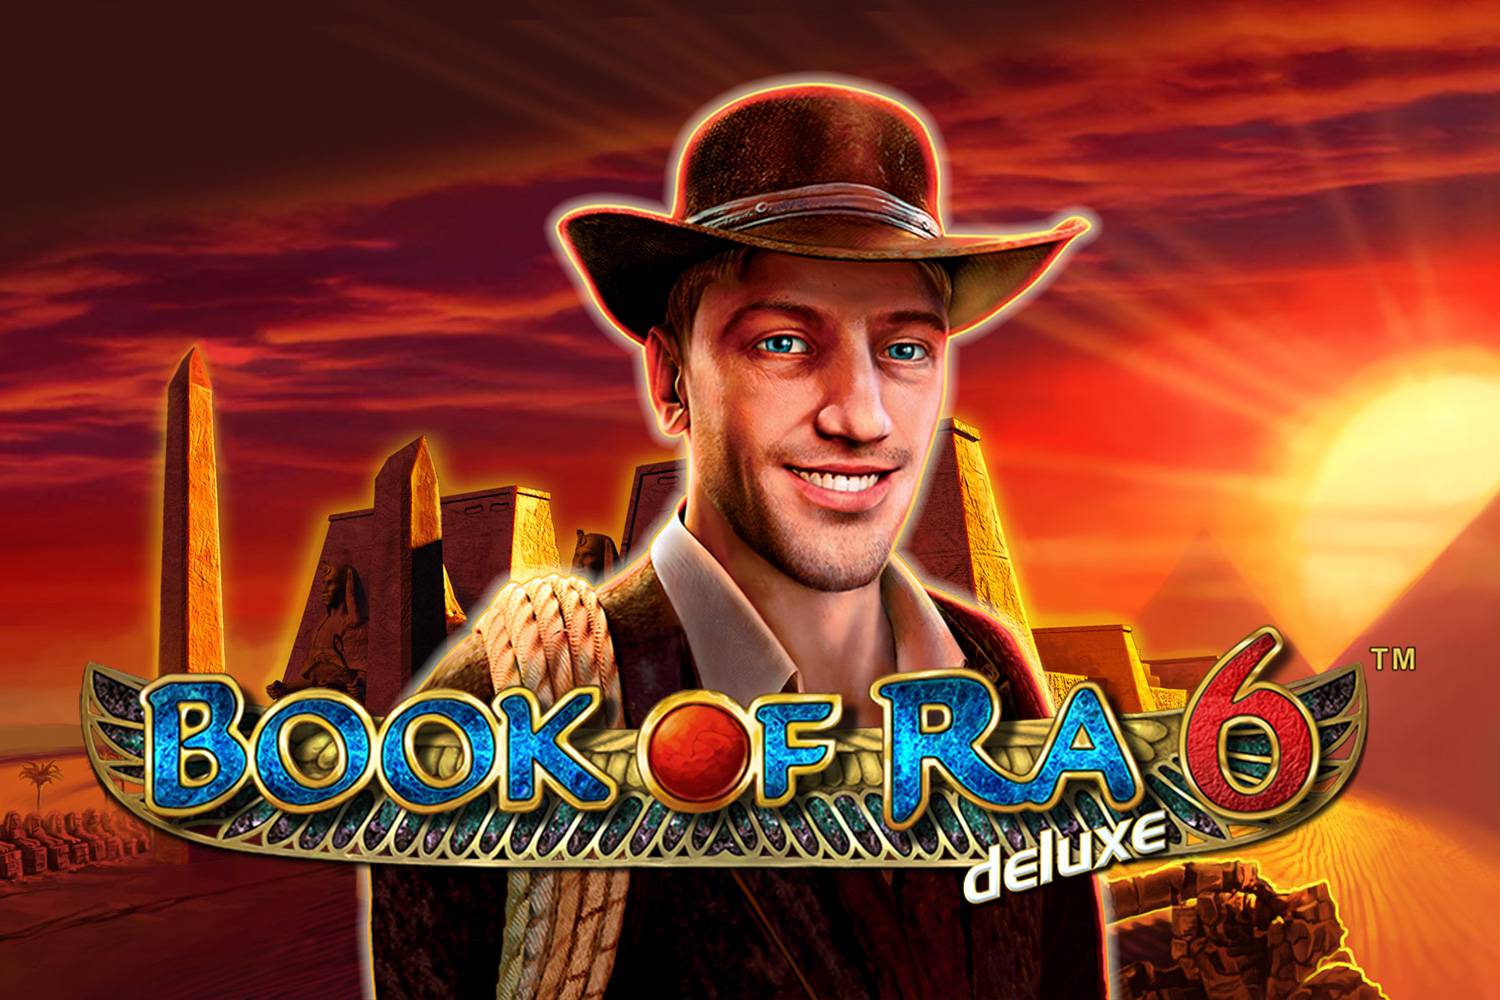 Book of Ra online casino igra ima veću šansu za dobitak?